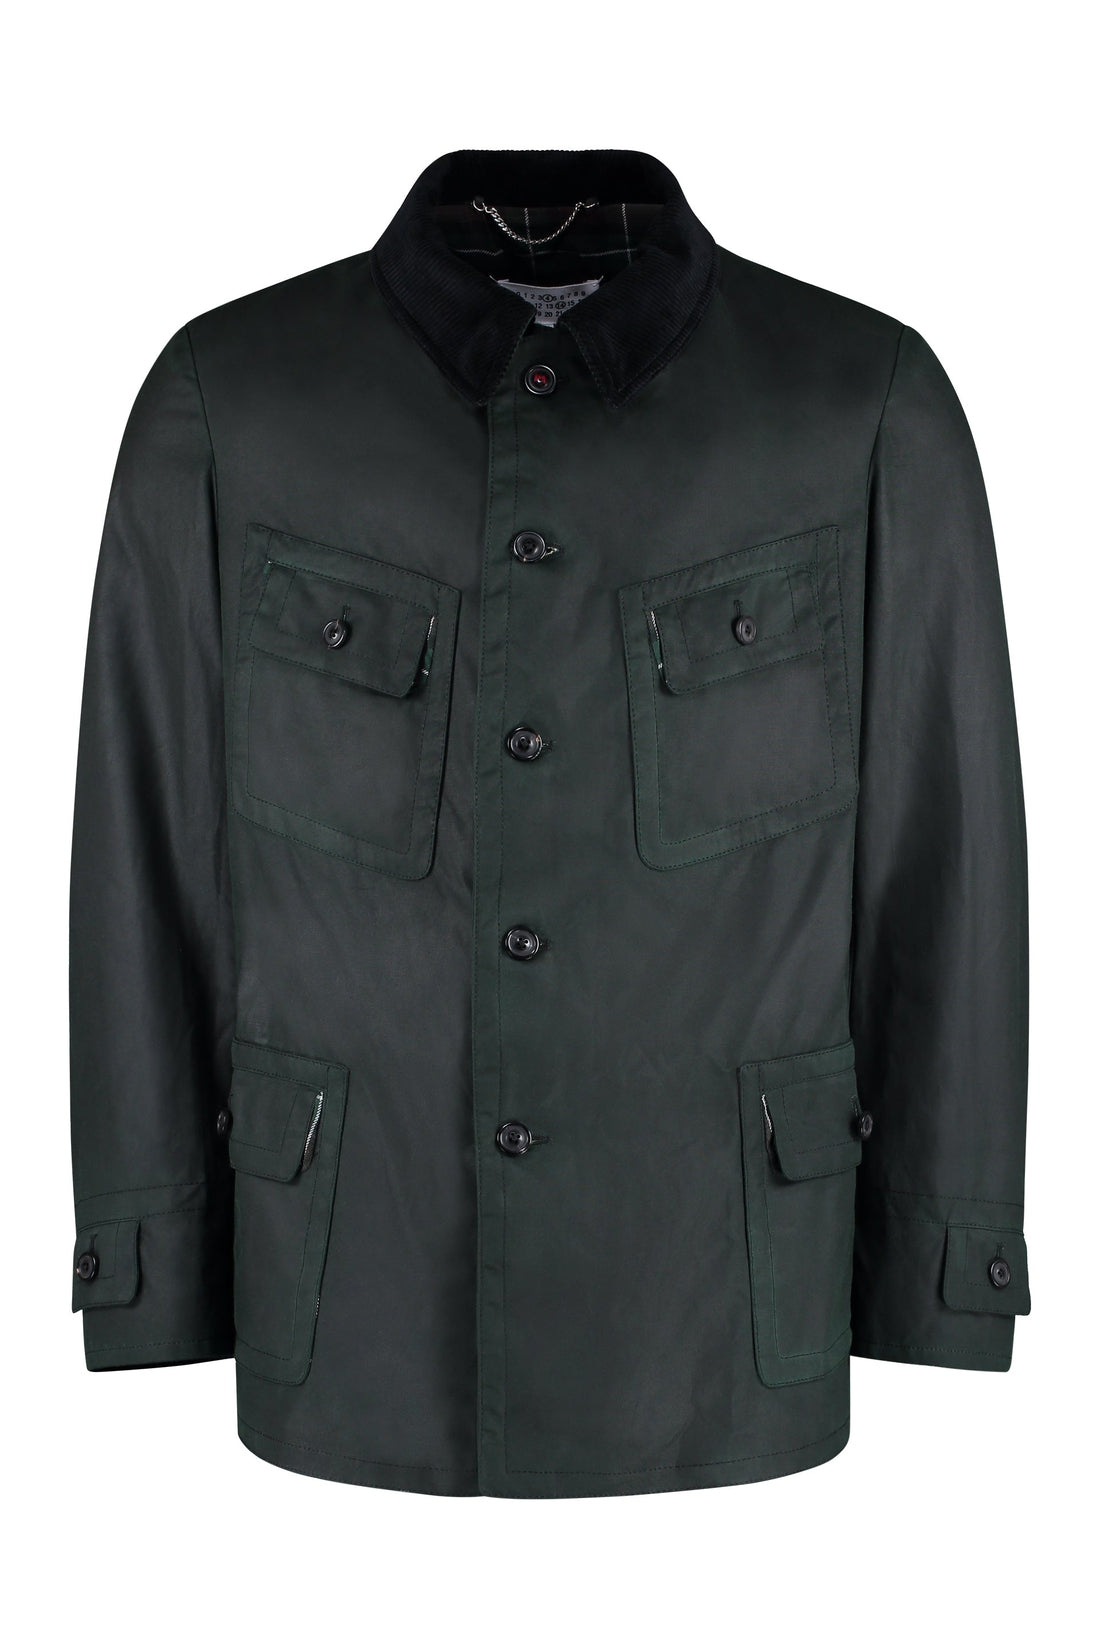 Maison Margiela-OUTLET-SALE-Multi-pocket cotton jacket-ARCHIVIST